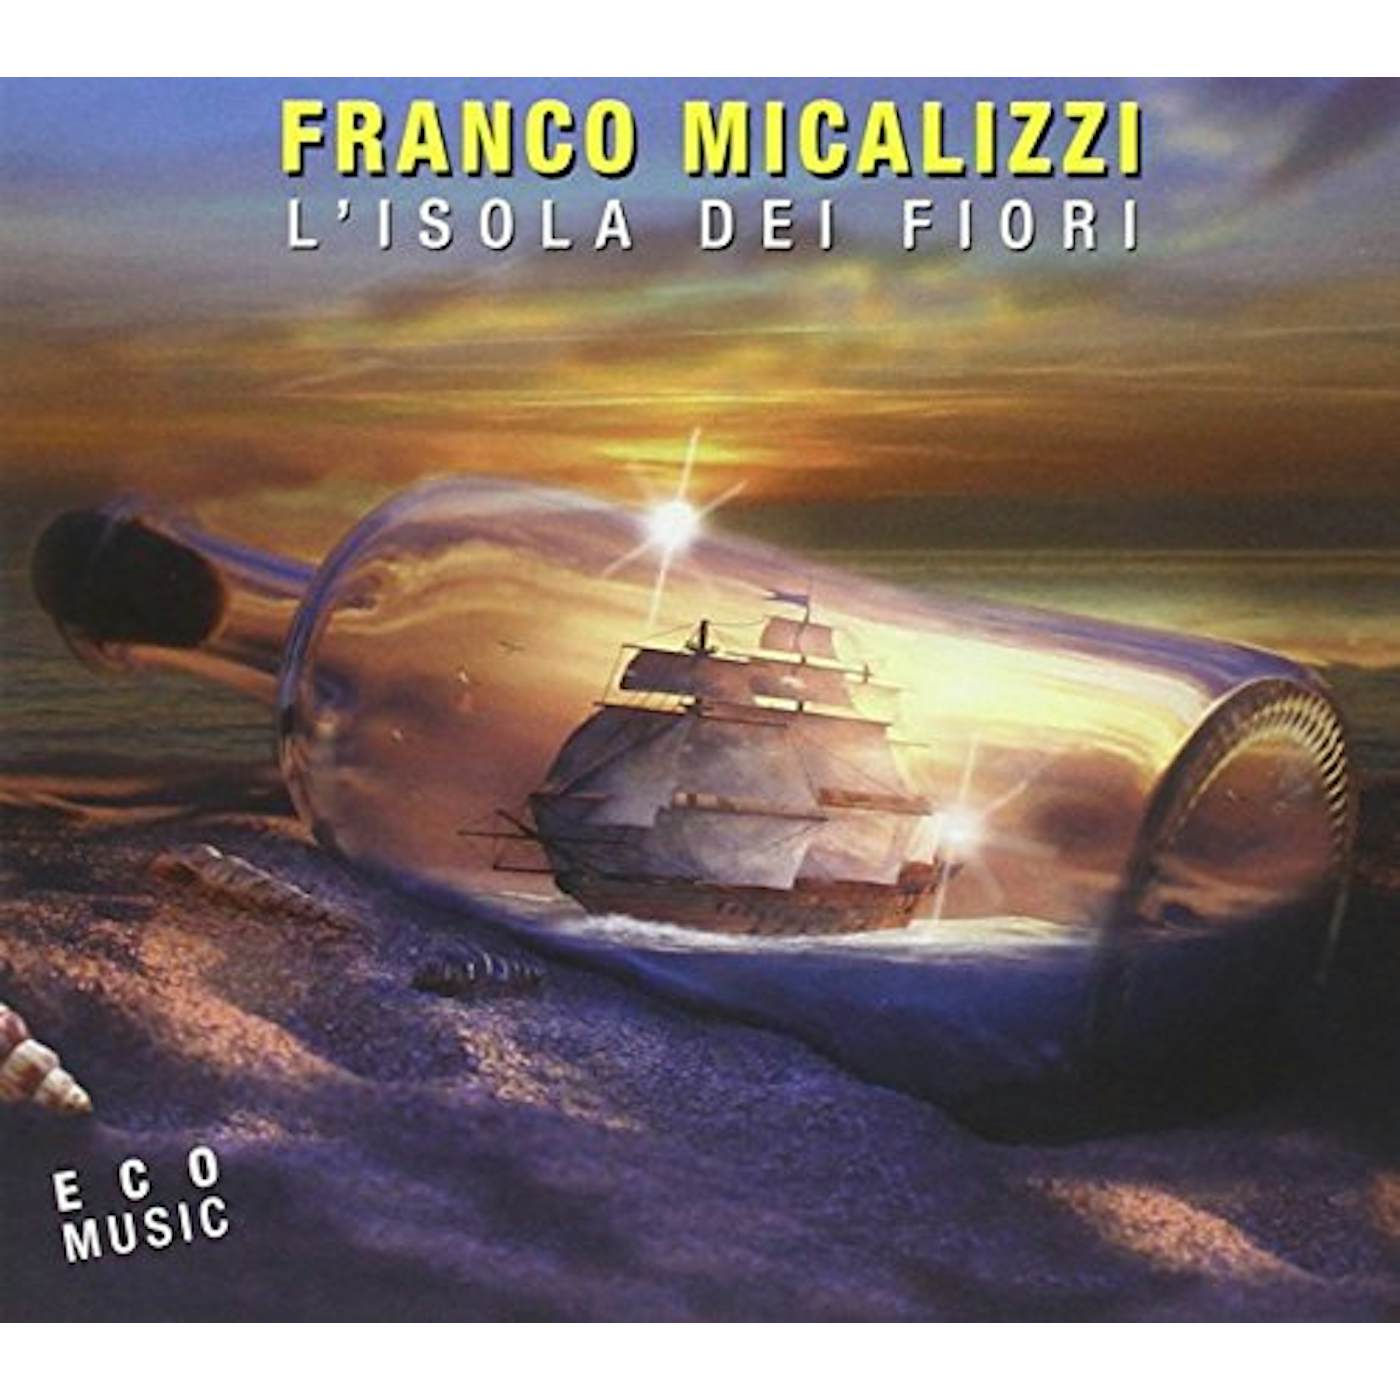 Franco Micalizzi L'ISOLA DEI FIORI CD